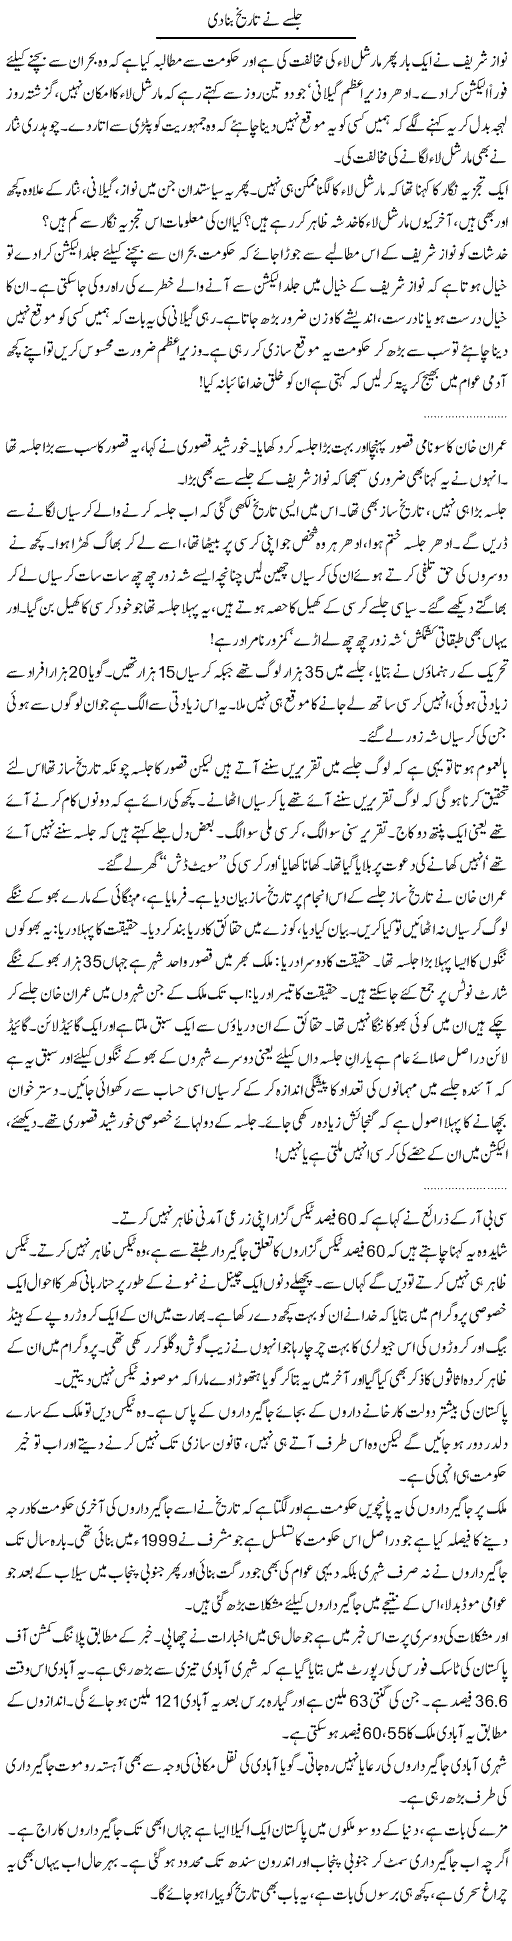 Nawaz and Imran Express Column Abdullah Tariq 22 December 2011